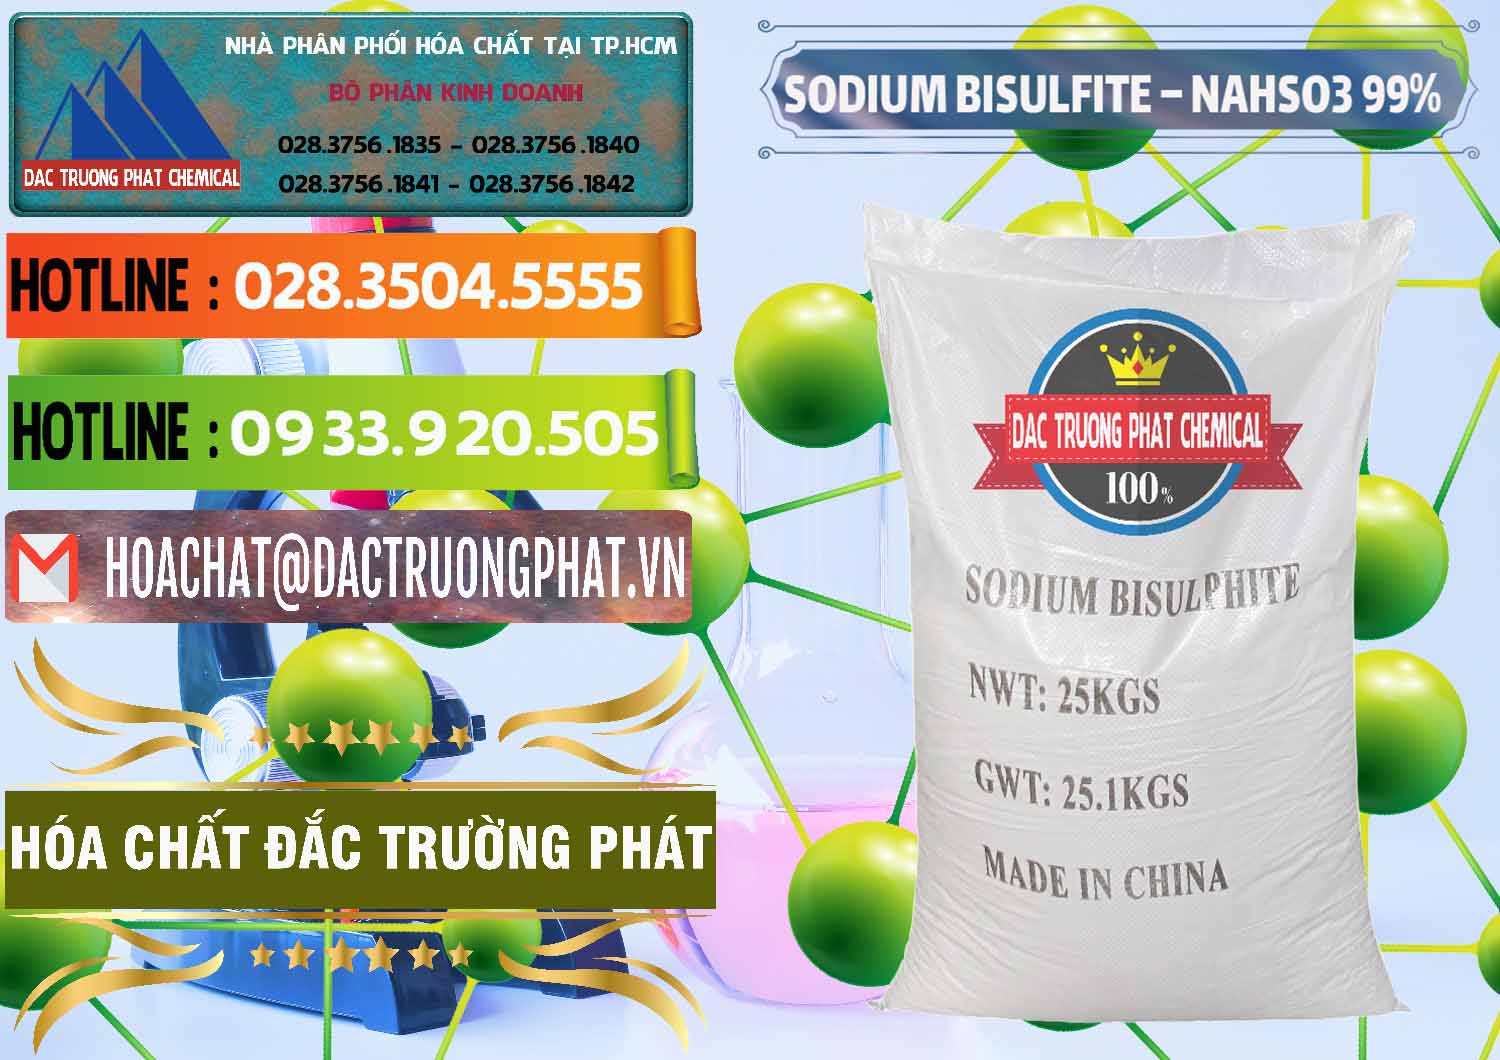 Đơn vị kinh doanh và bán Sodium Bisulfite – NAHSO3 Trung Quốc China - 0140 - Nhà phân phối - nhập khẩu hóa chất tại TP.HCM - cungcaphoachat.com.vn